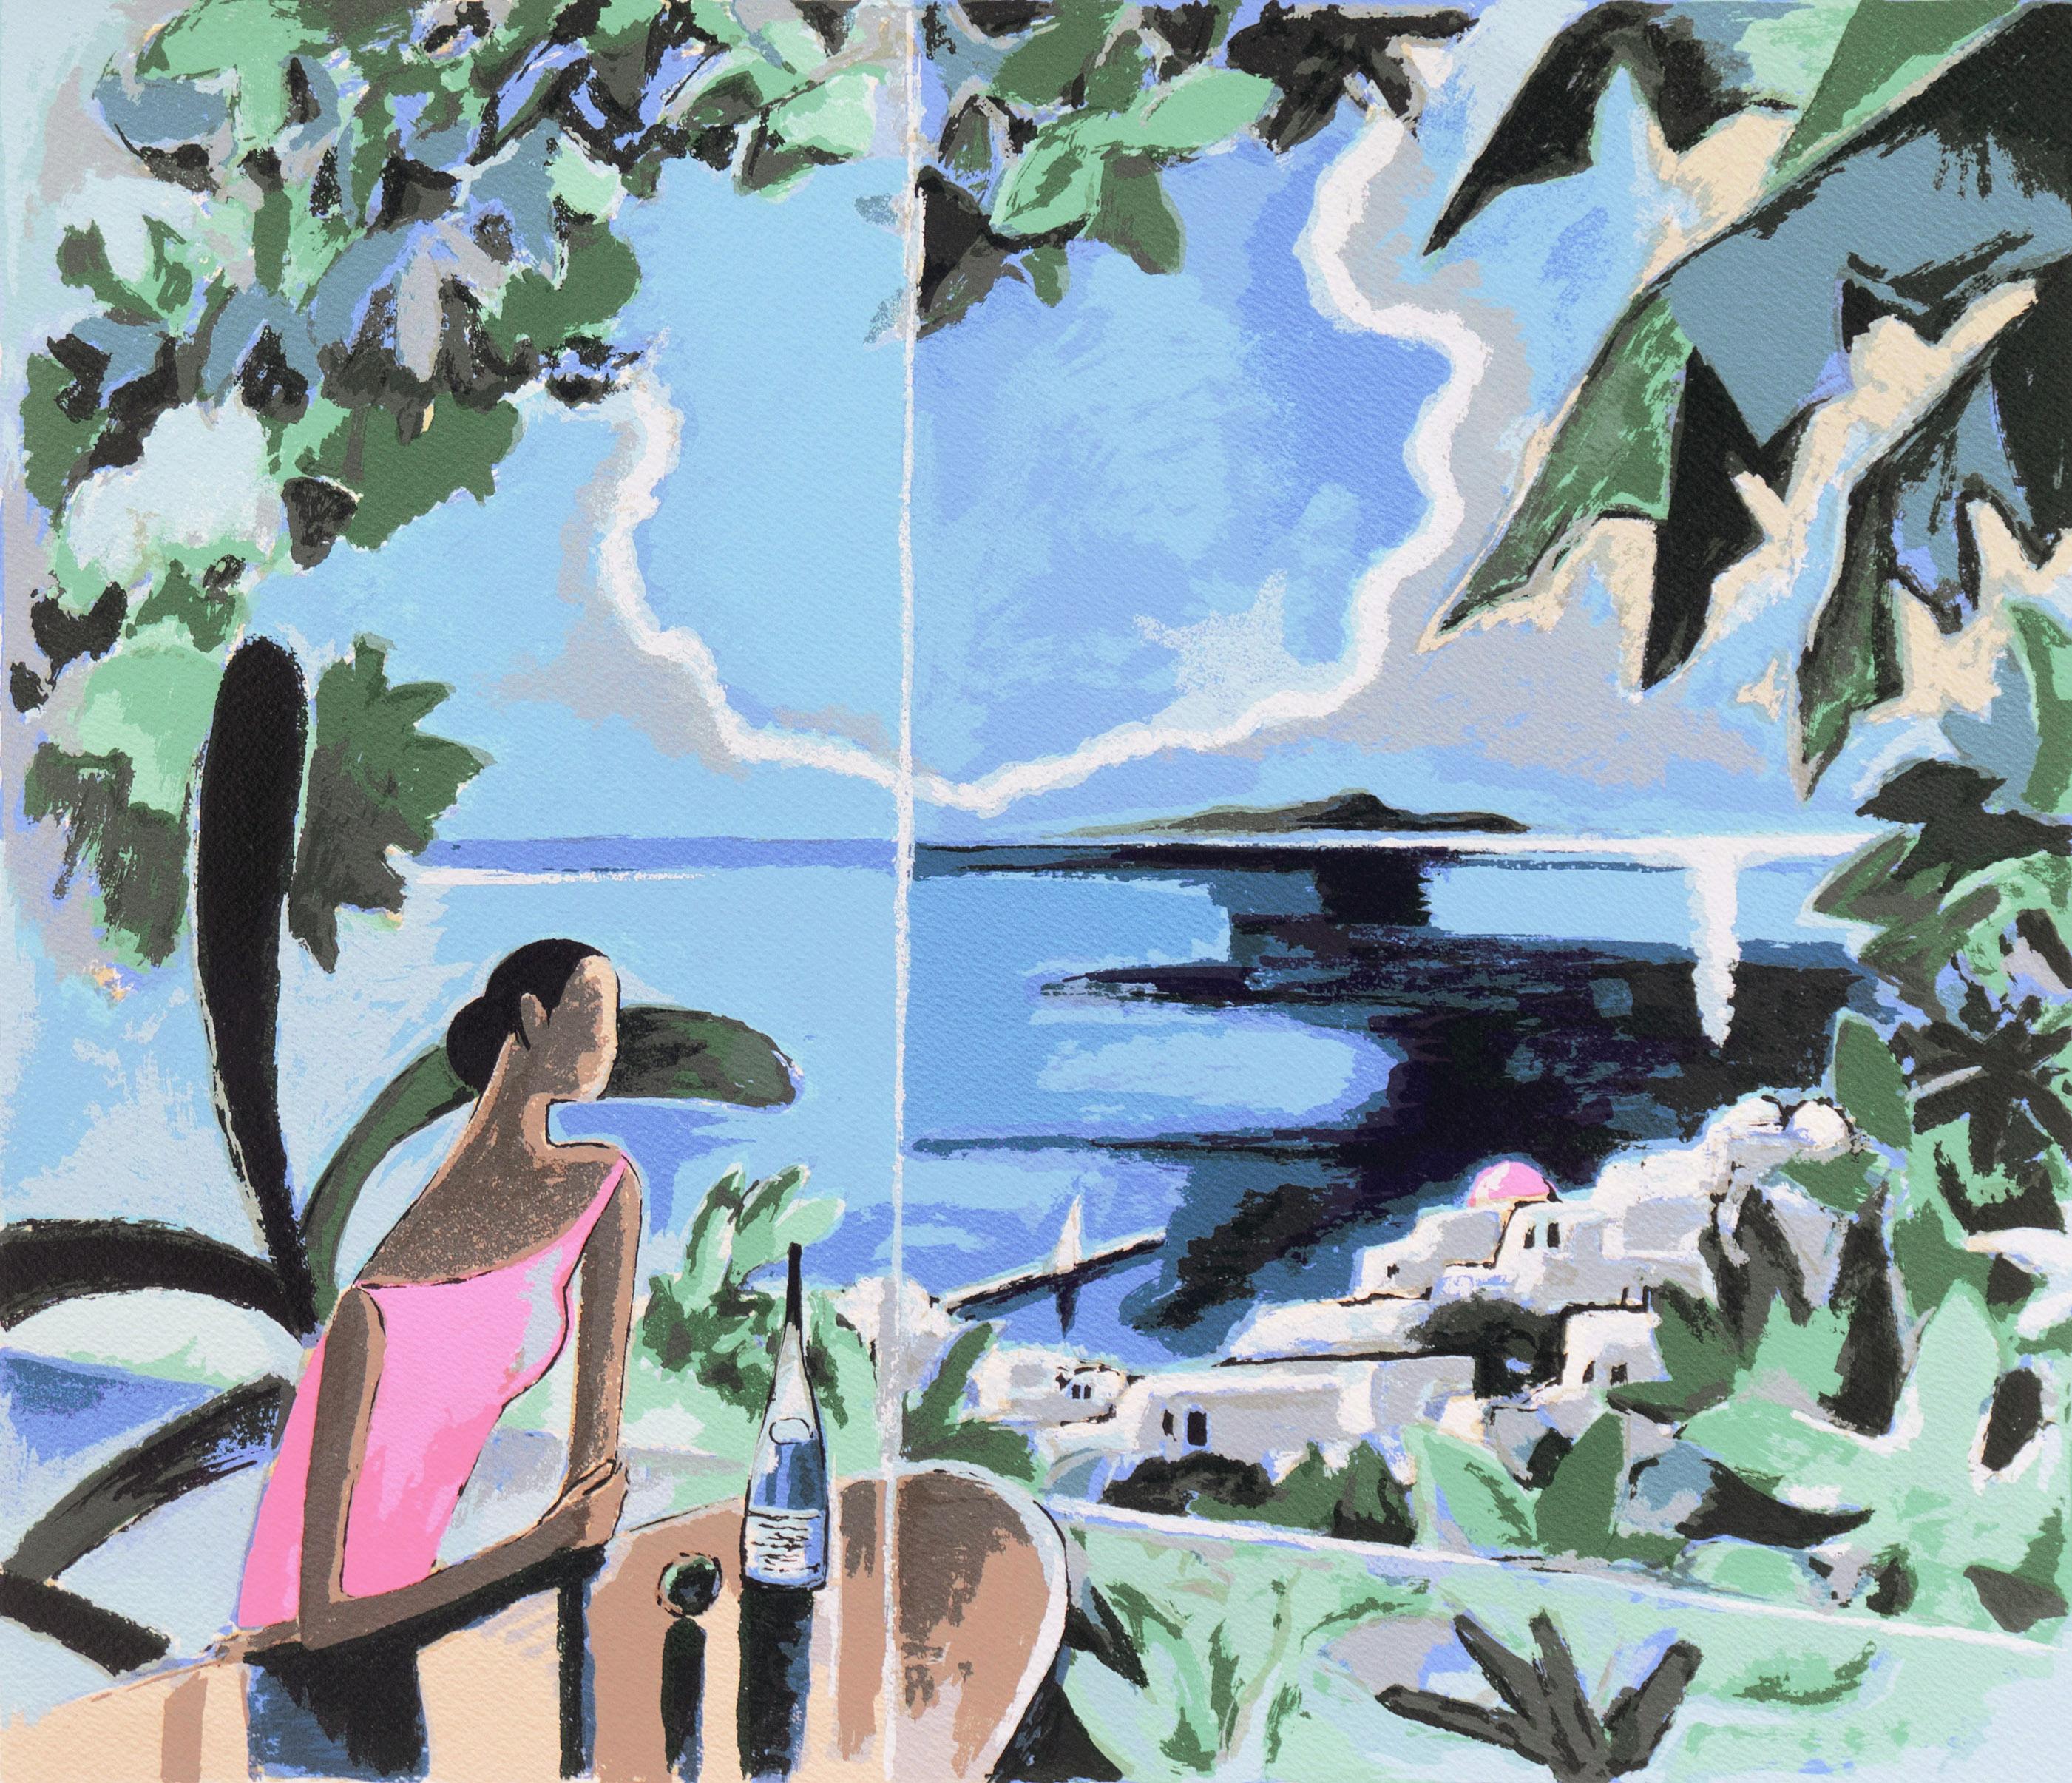 Yoshito Hirano Landscape Print - 'A Comfortable Place, Santorini', Agaean Sea, Greece, Japanese